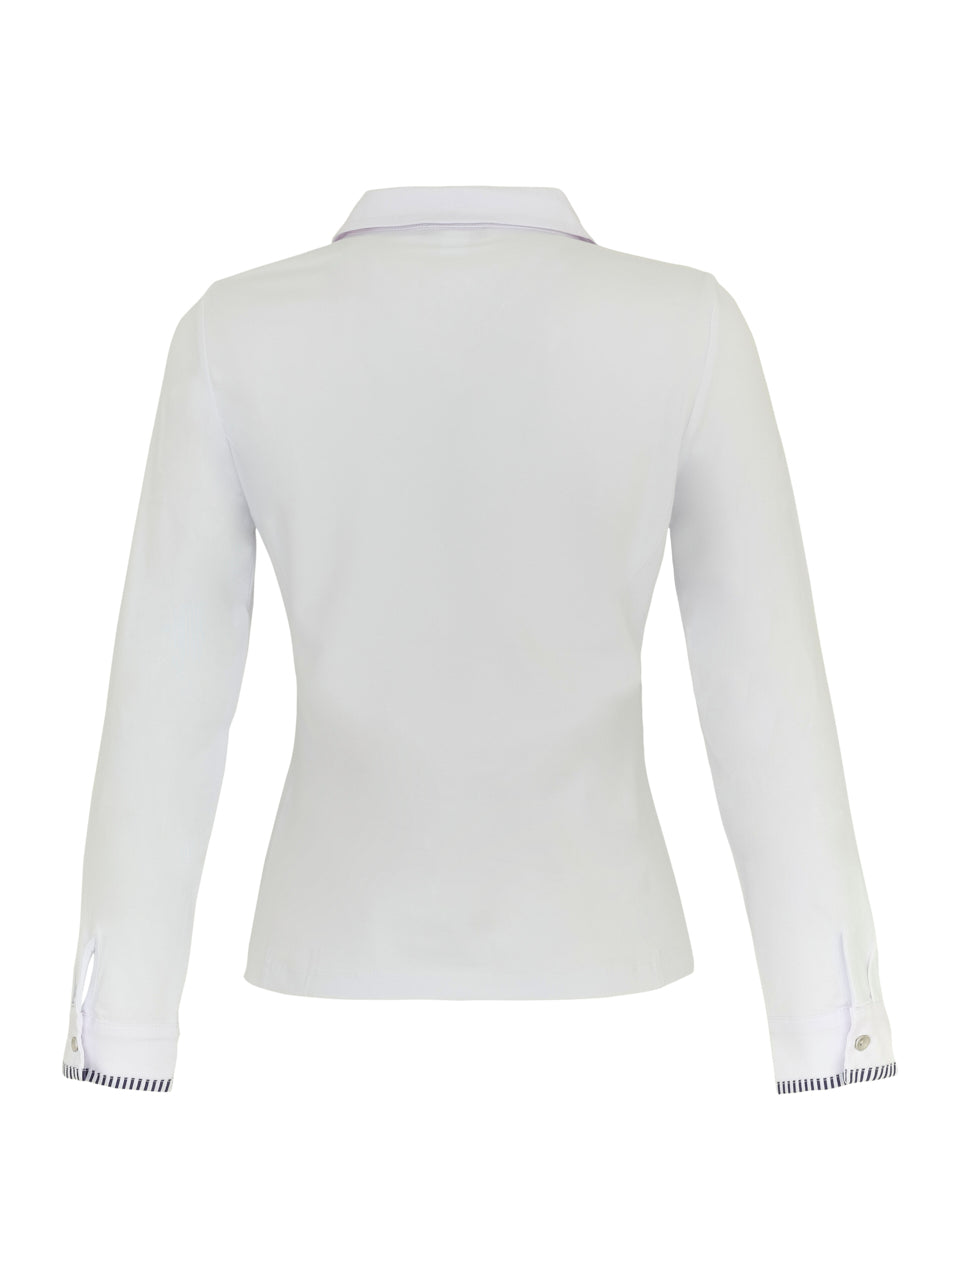 White Button Up Shirt with 'Garden Leaf' Design